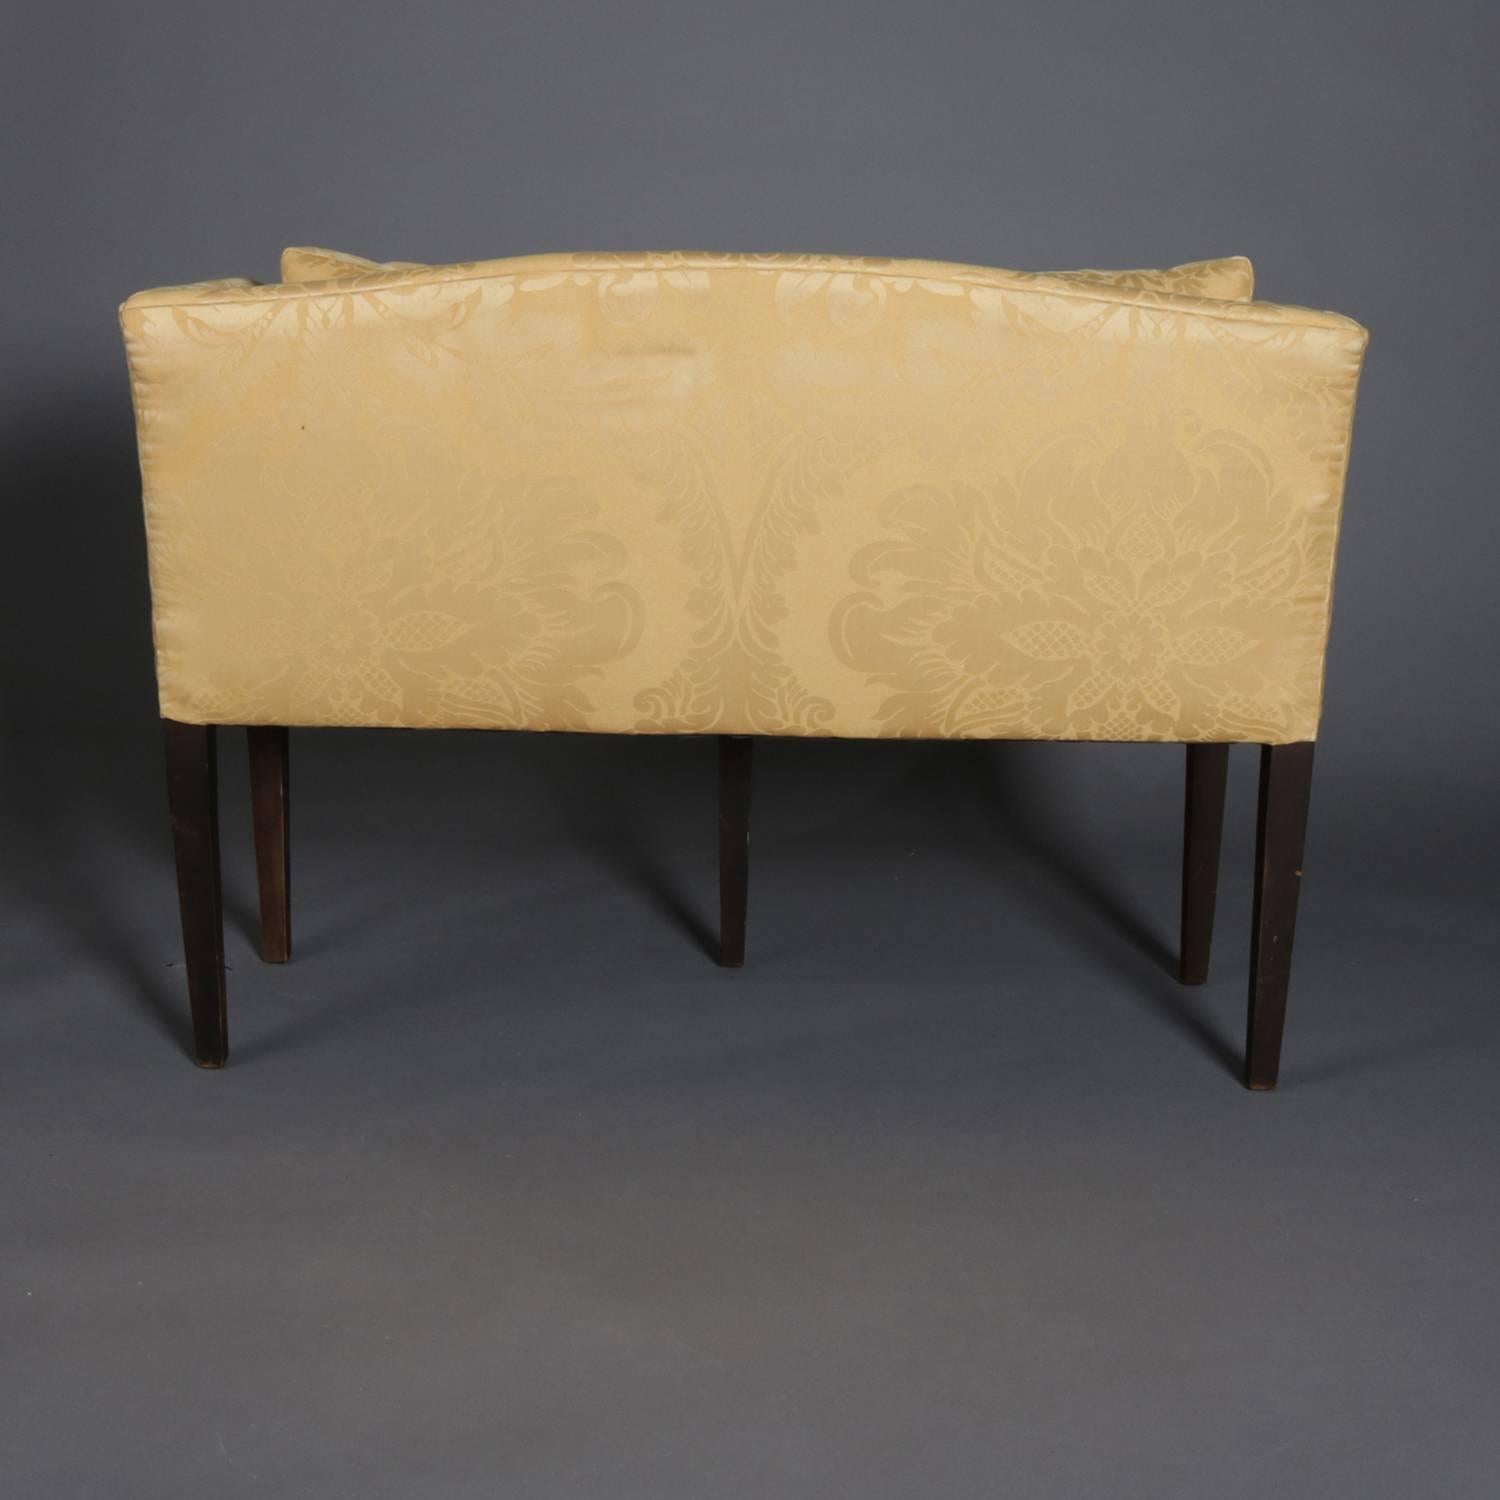 Upholstery Antique English Hepplewhite Style Upholstered Mahogany Petite Settee